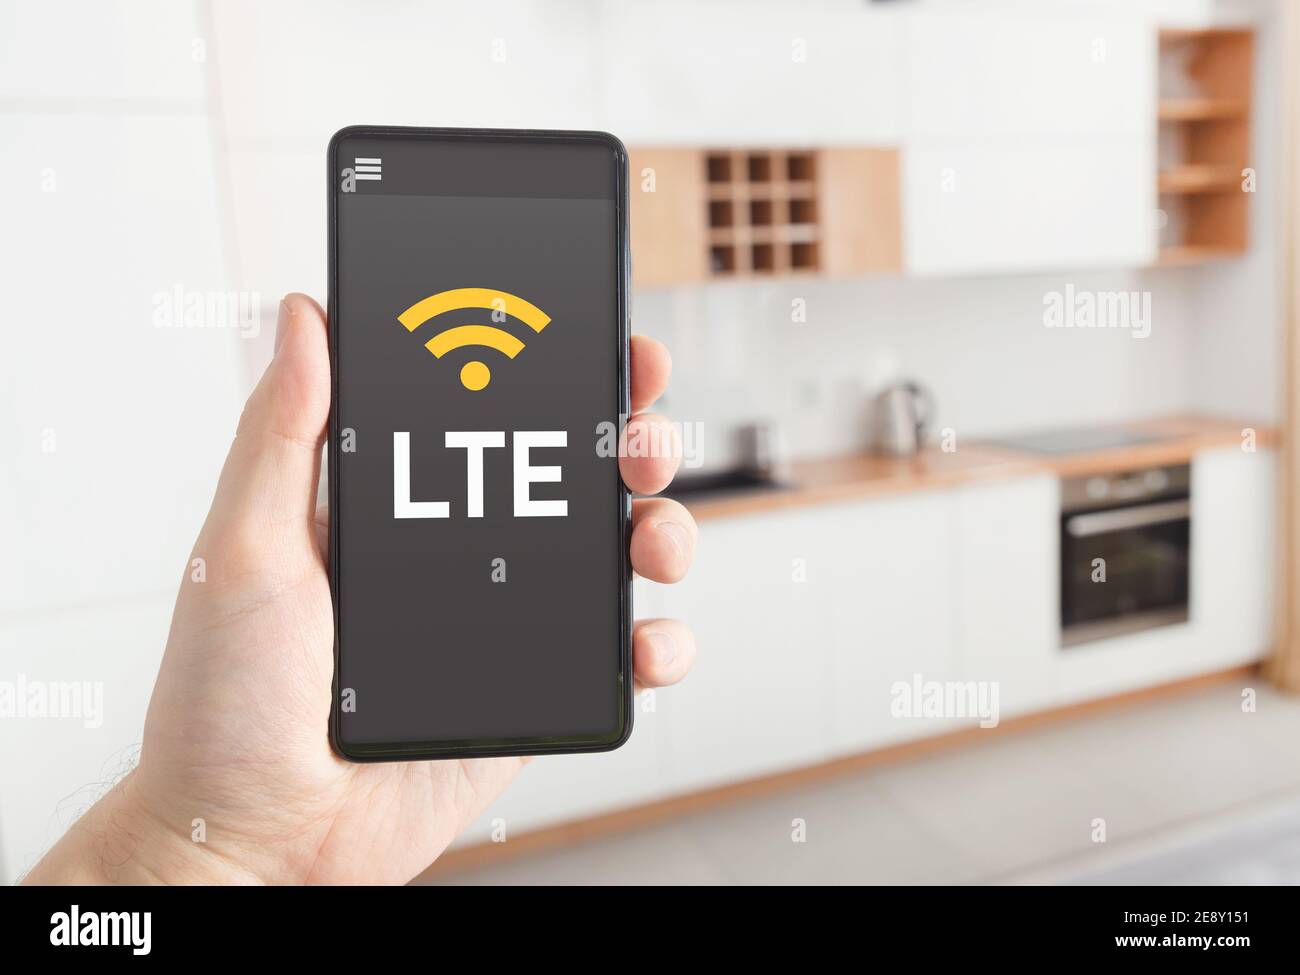 Connessione Internet veloce LTE. Uomo che tiene lo smartphone con il logo LTE sullo schermo. Foto Stock